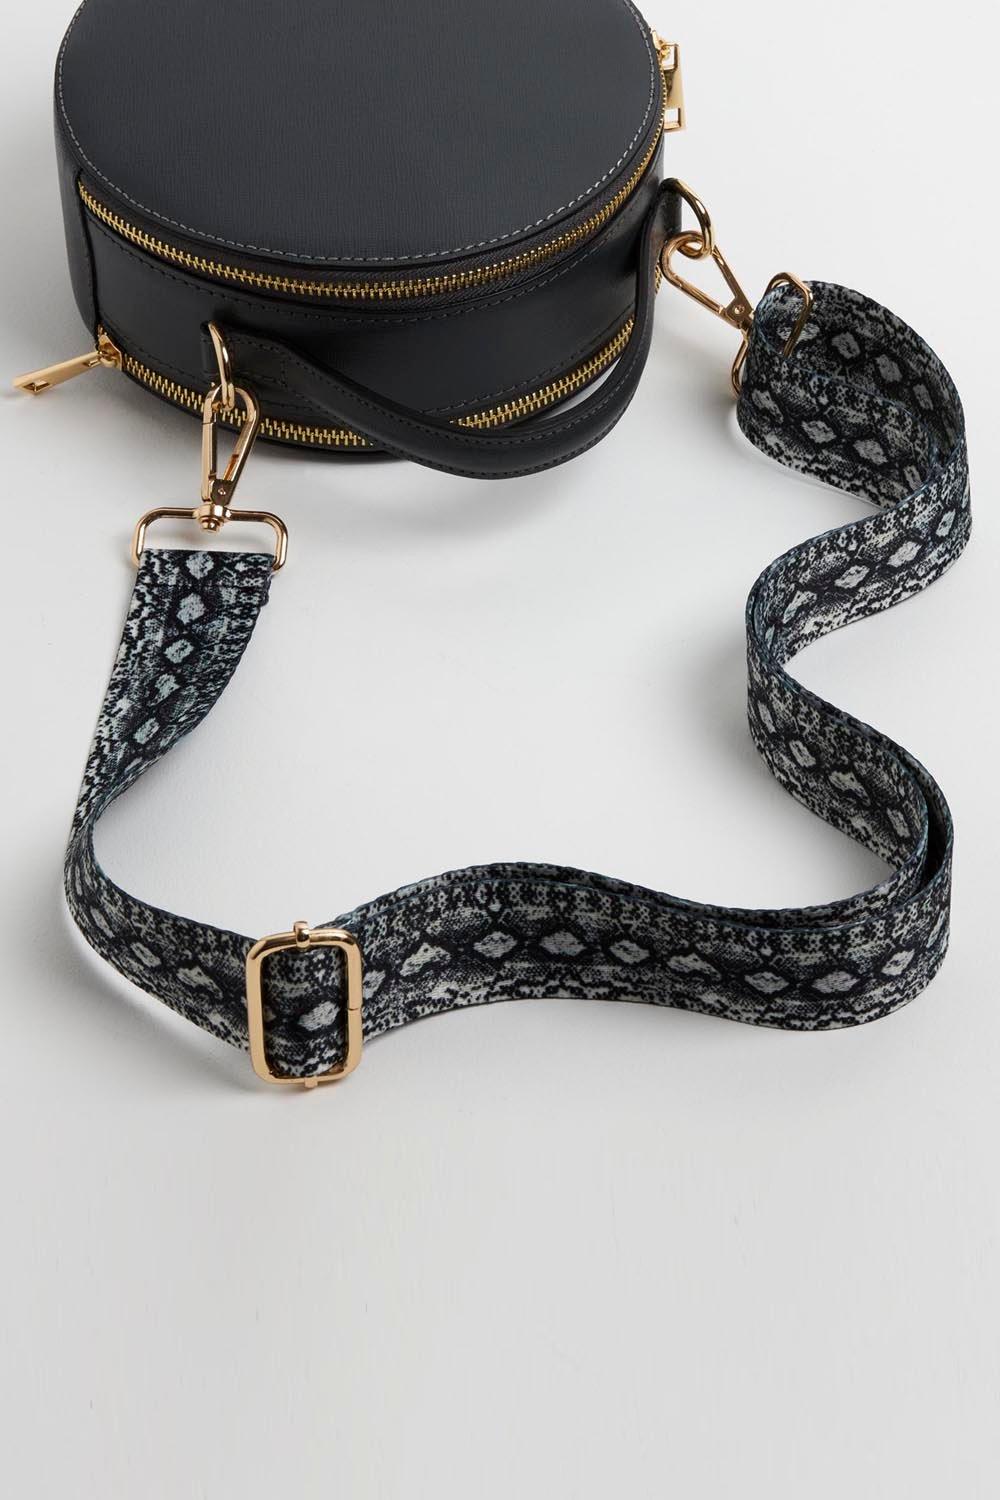 Круглая сумка через плечо 'Rome' со змеиным ремешком Betsy & Floss, серый 4 шт металлическая сумка с боковым краем подвесная пряжка зажим с d образными кольцами для сделай сам кожаный ремешок для сумки ремешок